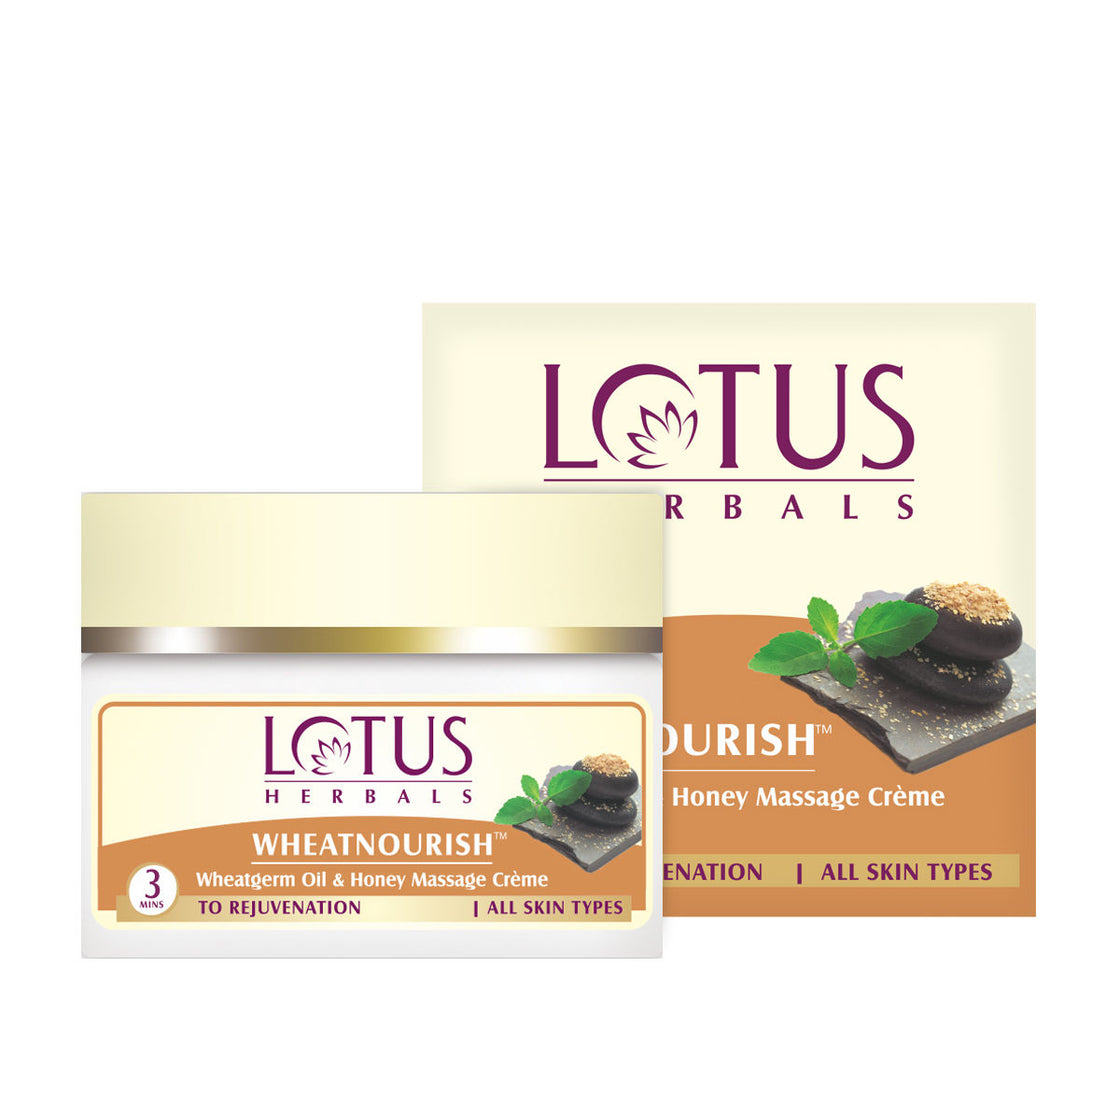 Lotus Herbals Wheatnourish Wheatgerm Oil & Honey Massage Cream (50g)